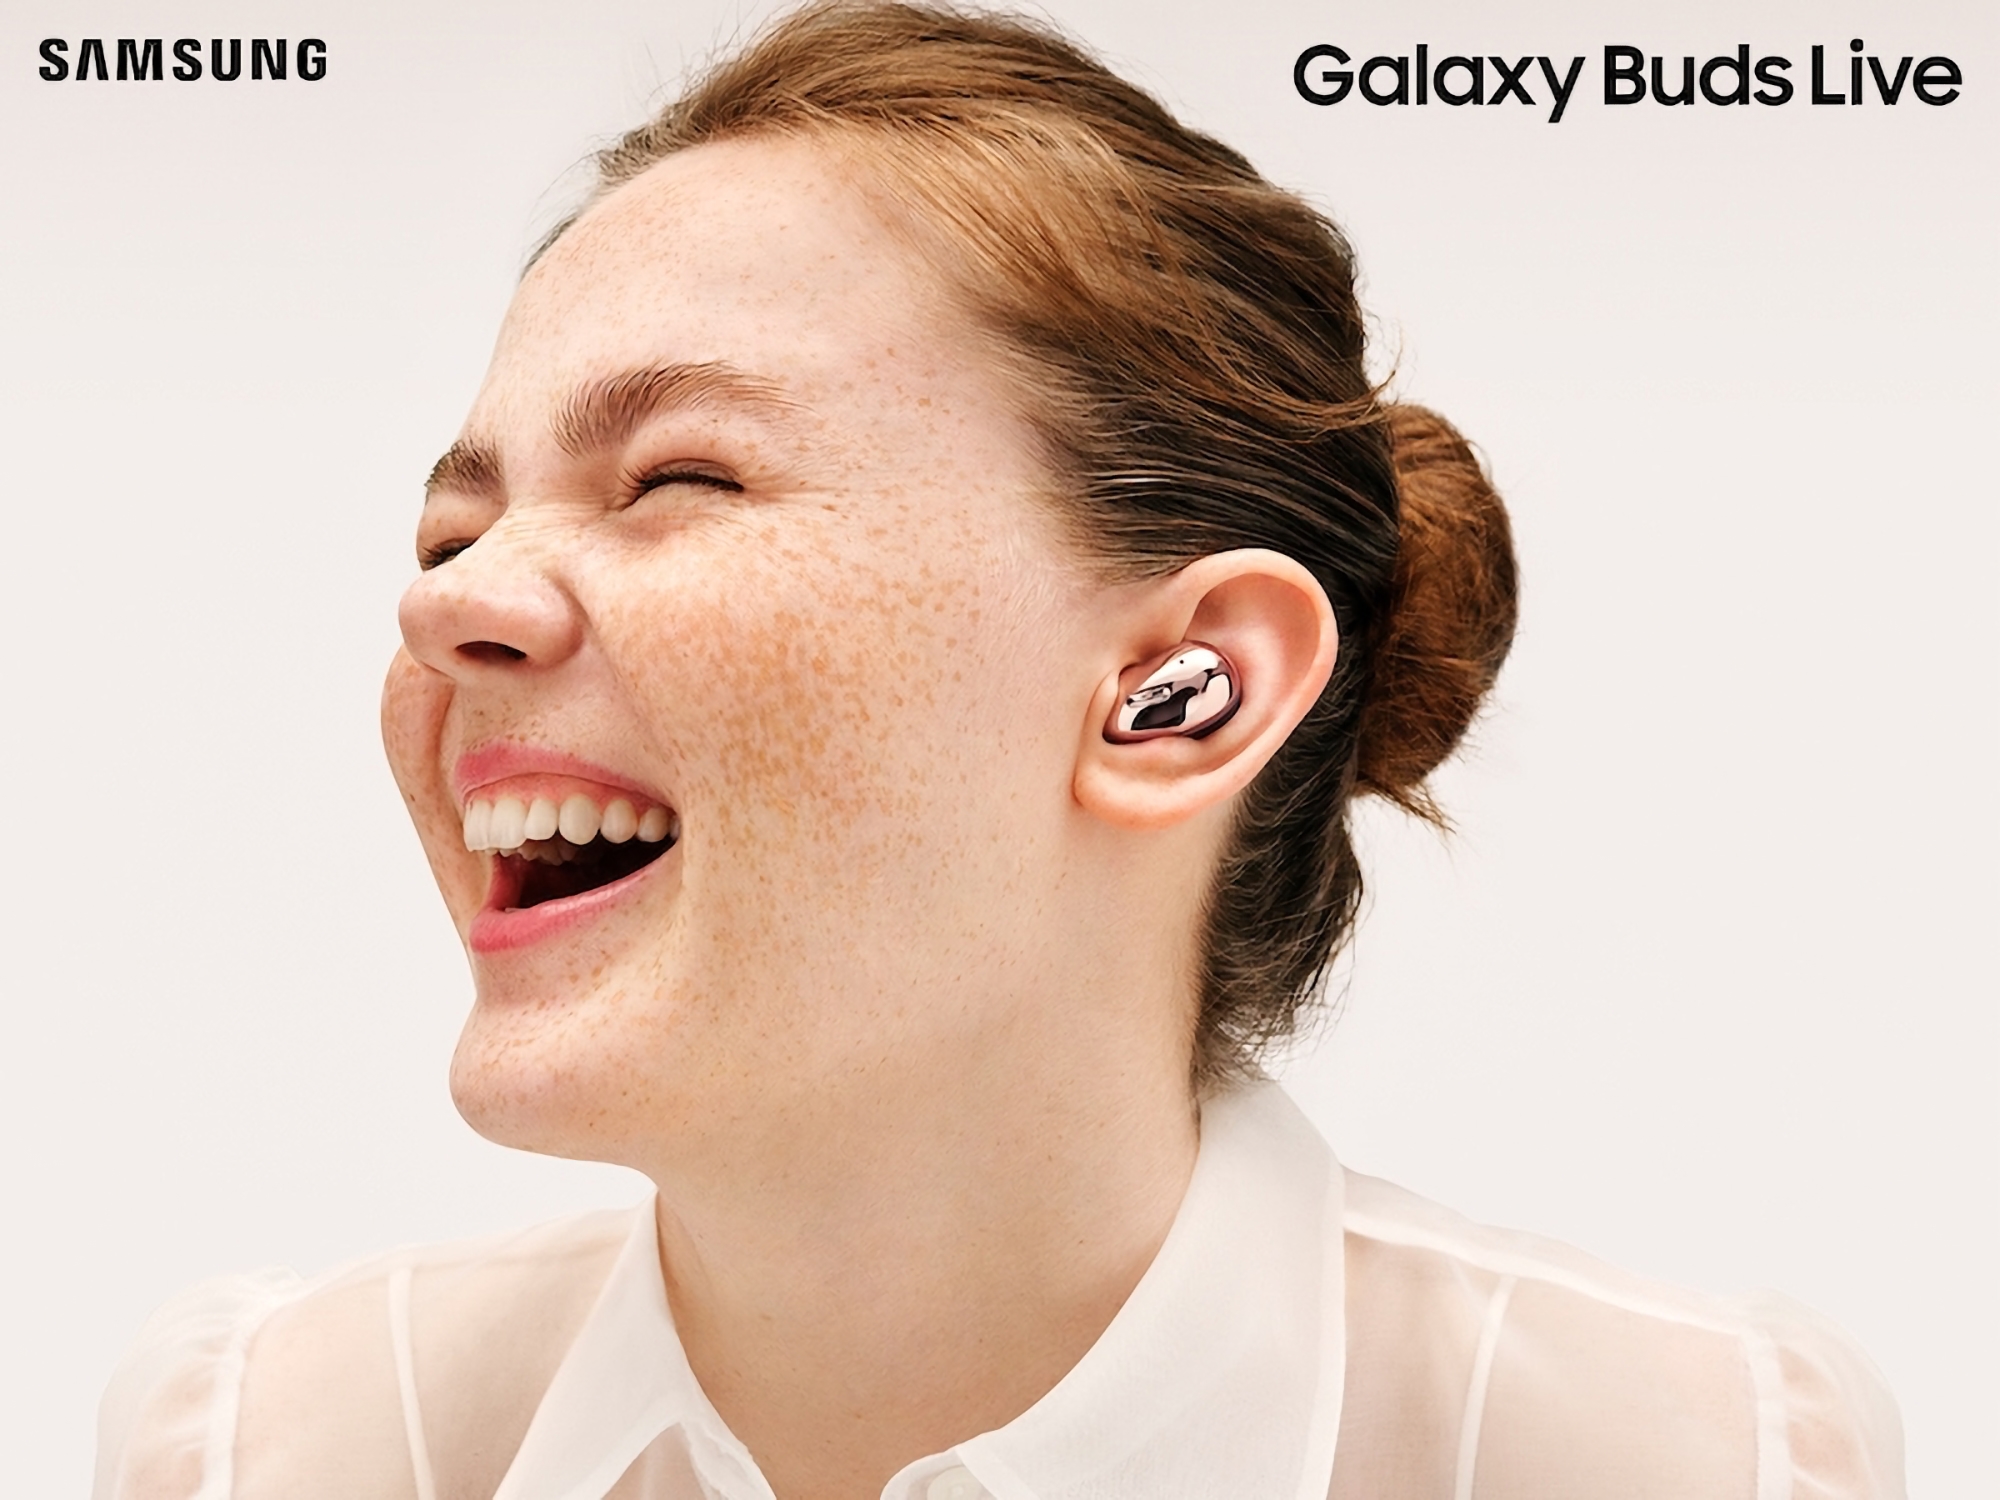 Plotka: Samsung nie planuje wydania następcy Galaxy Buds Live